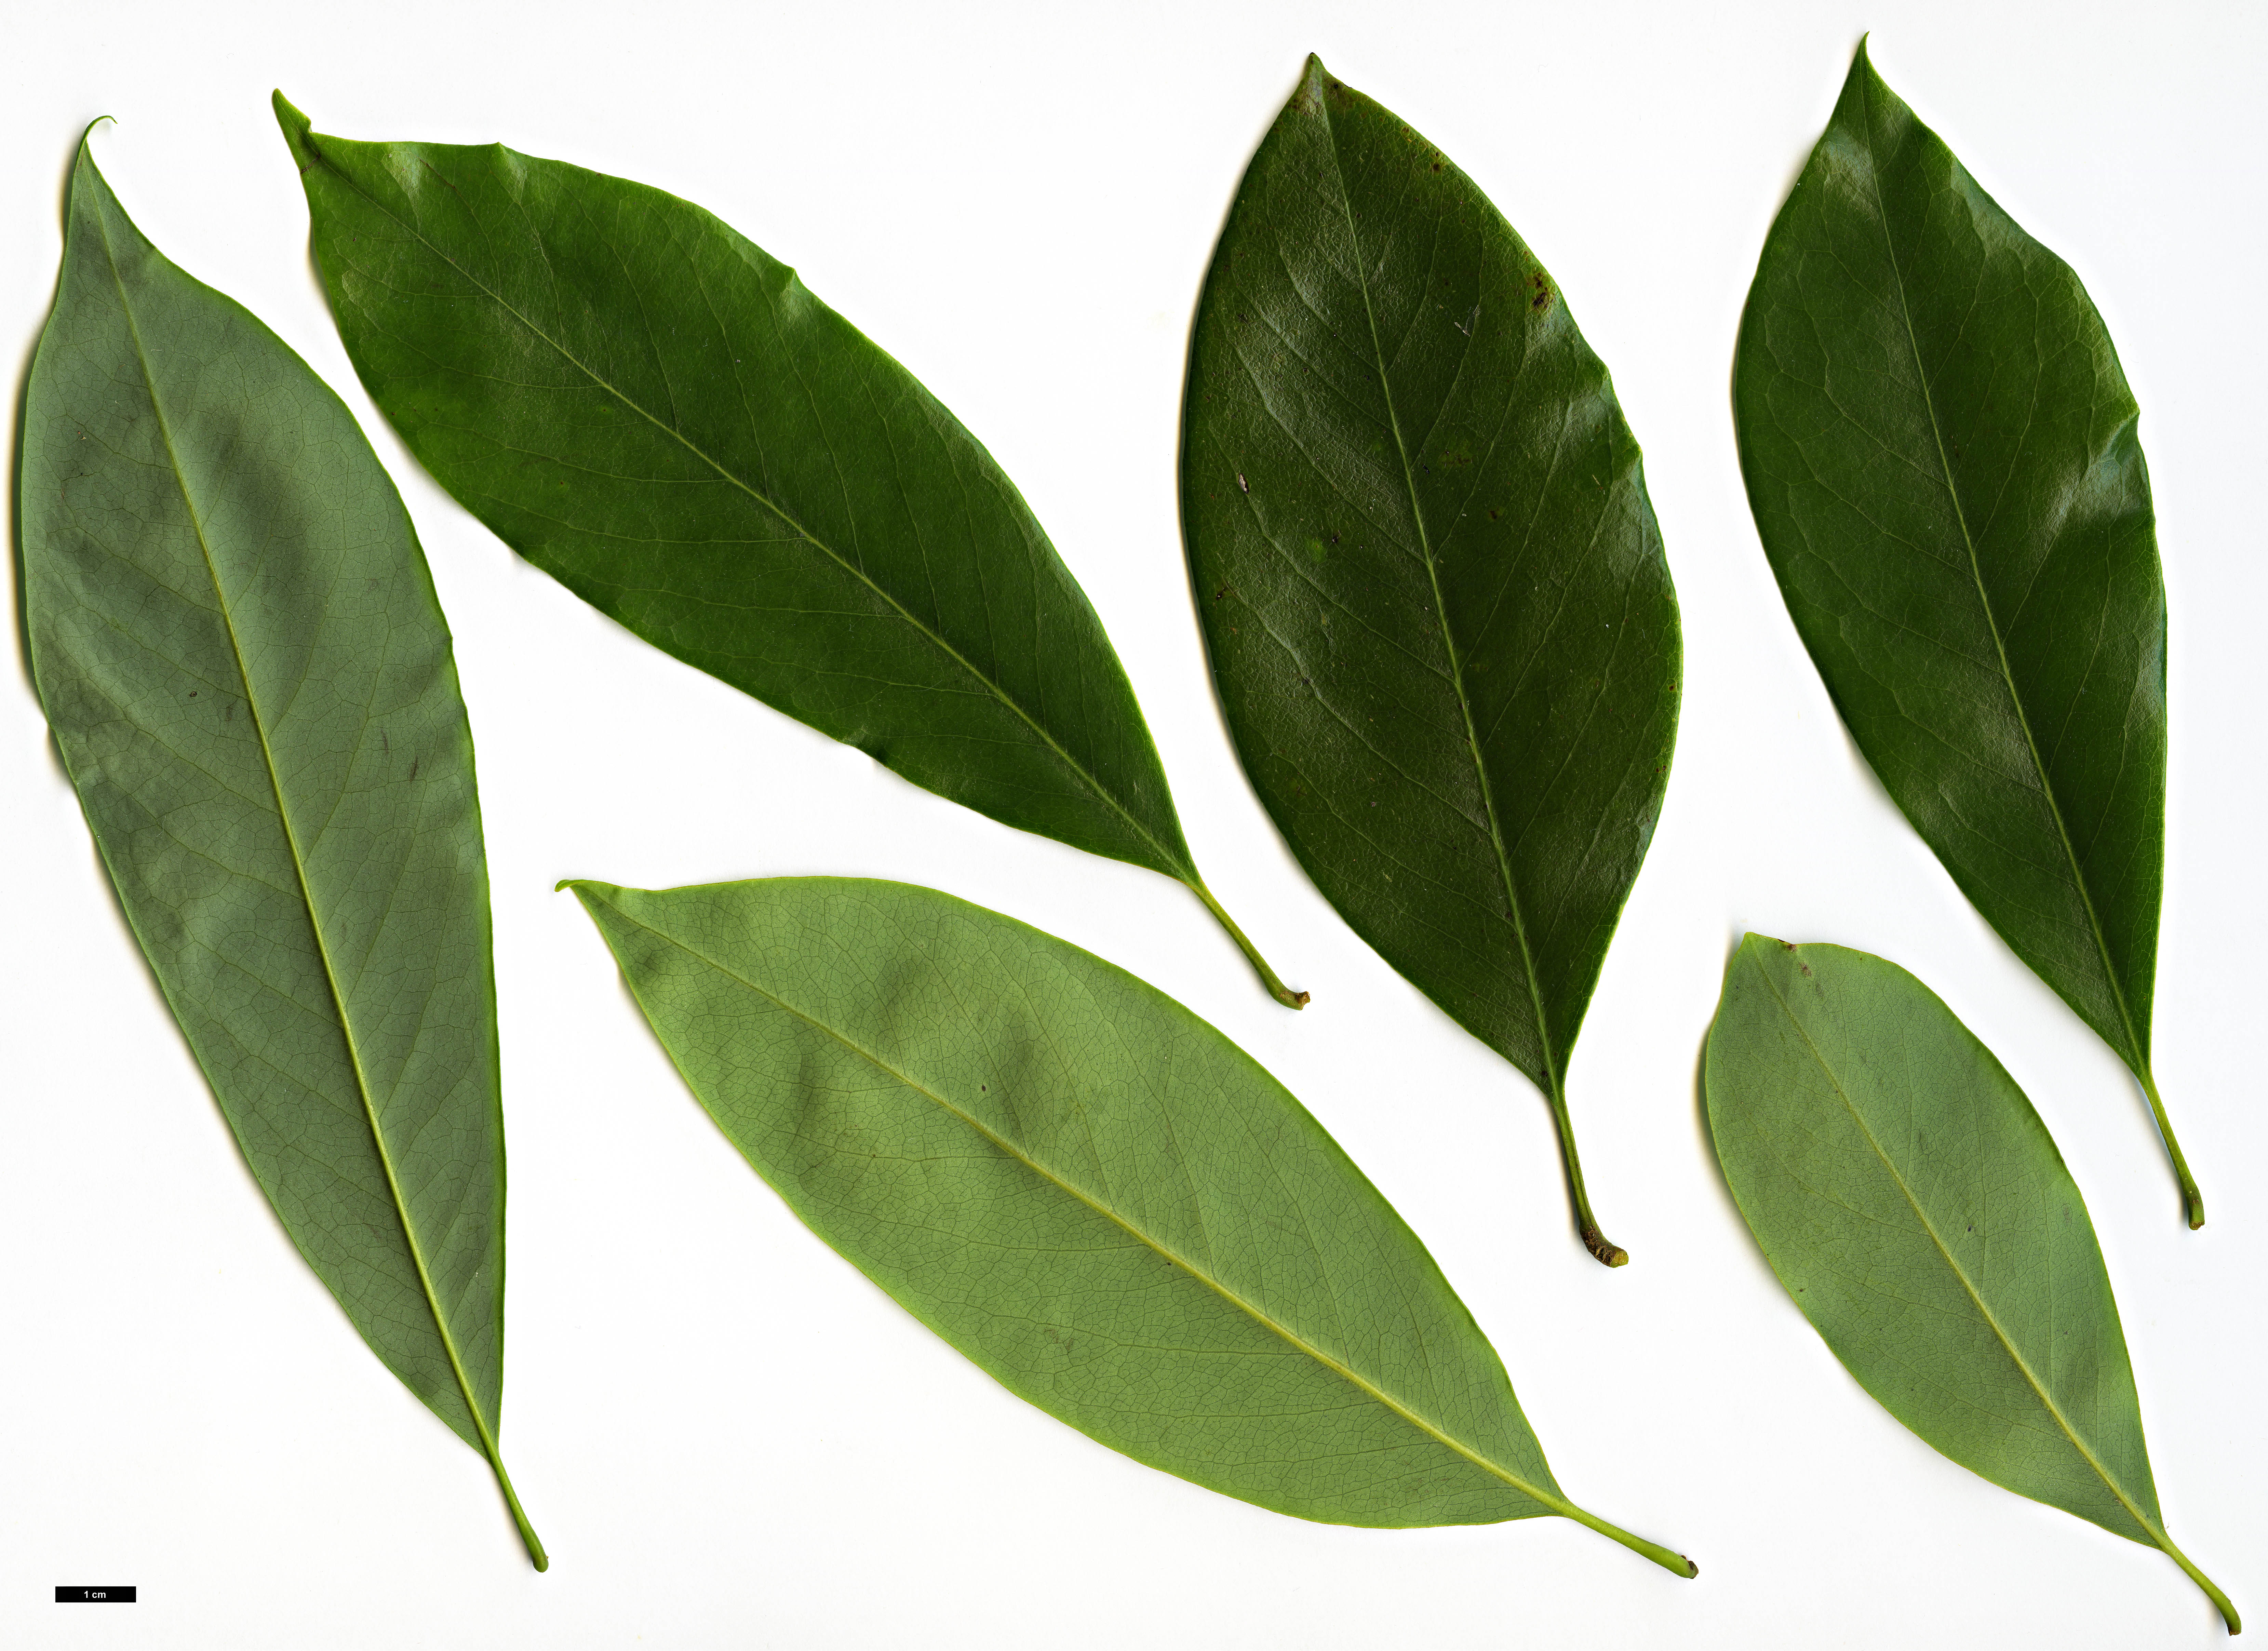 High resolution image: Family: Magnoliaceae - Genus: Magnolia - Taxon: ernestii